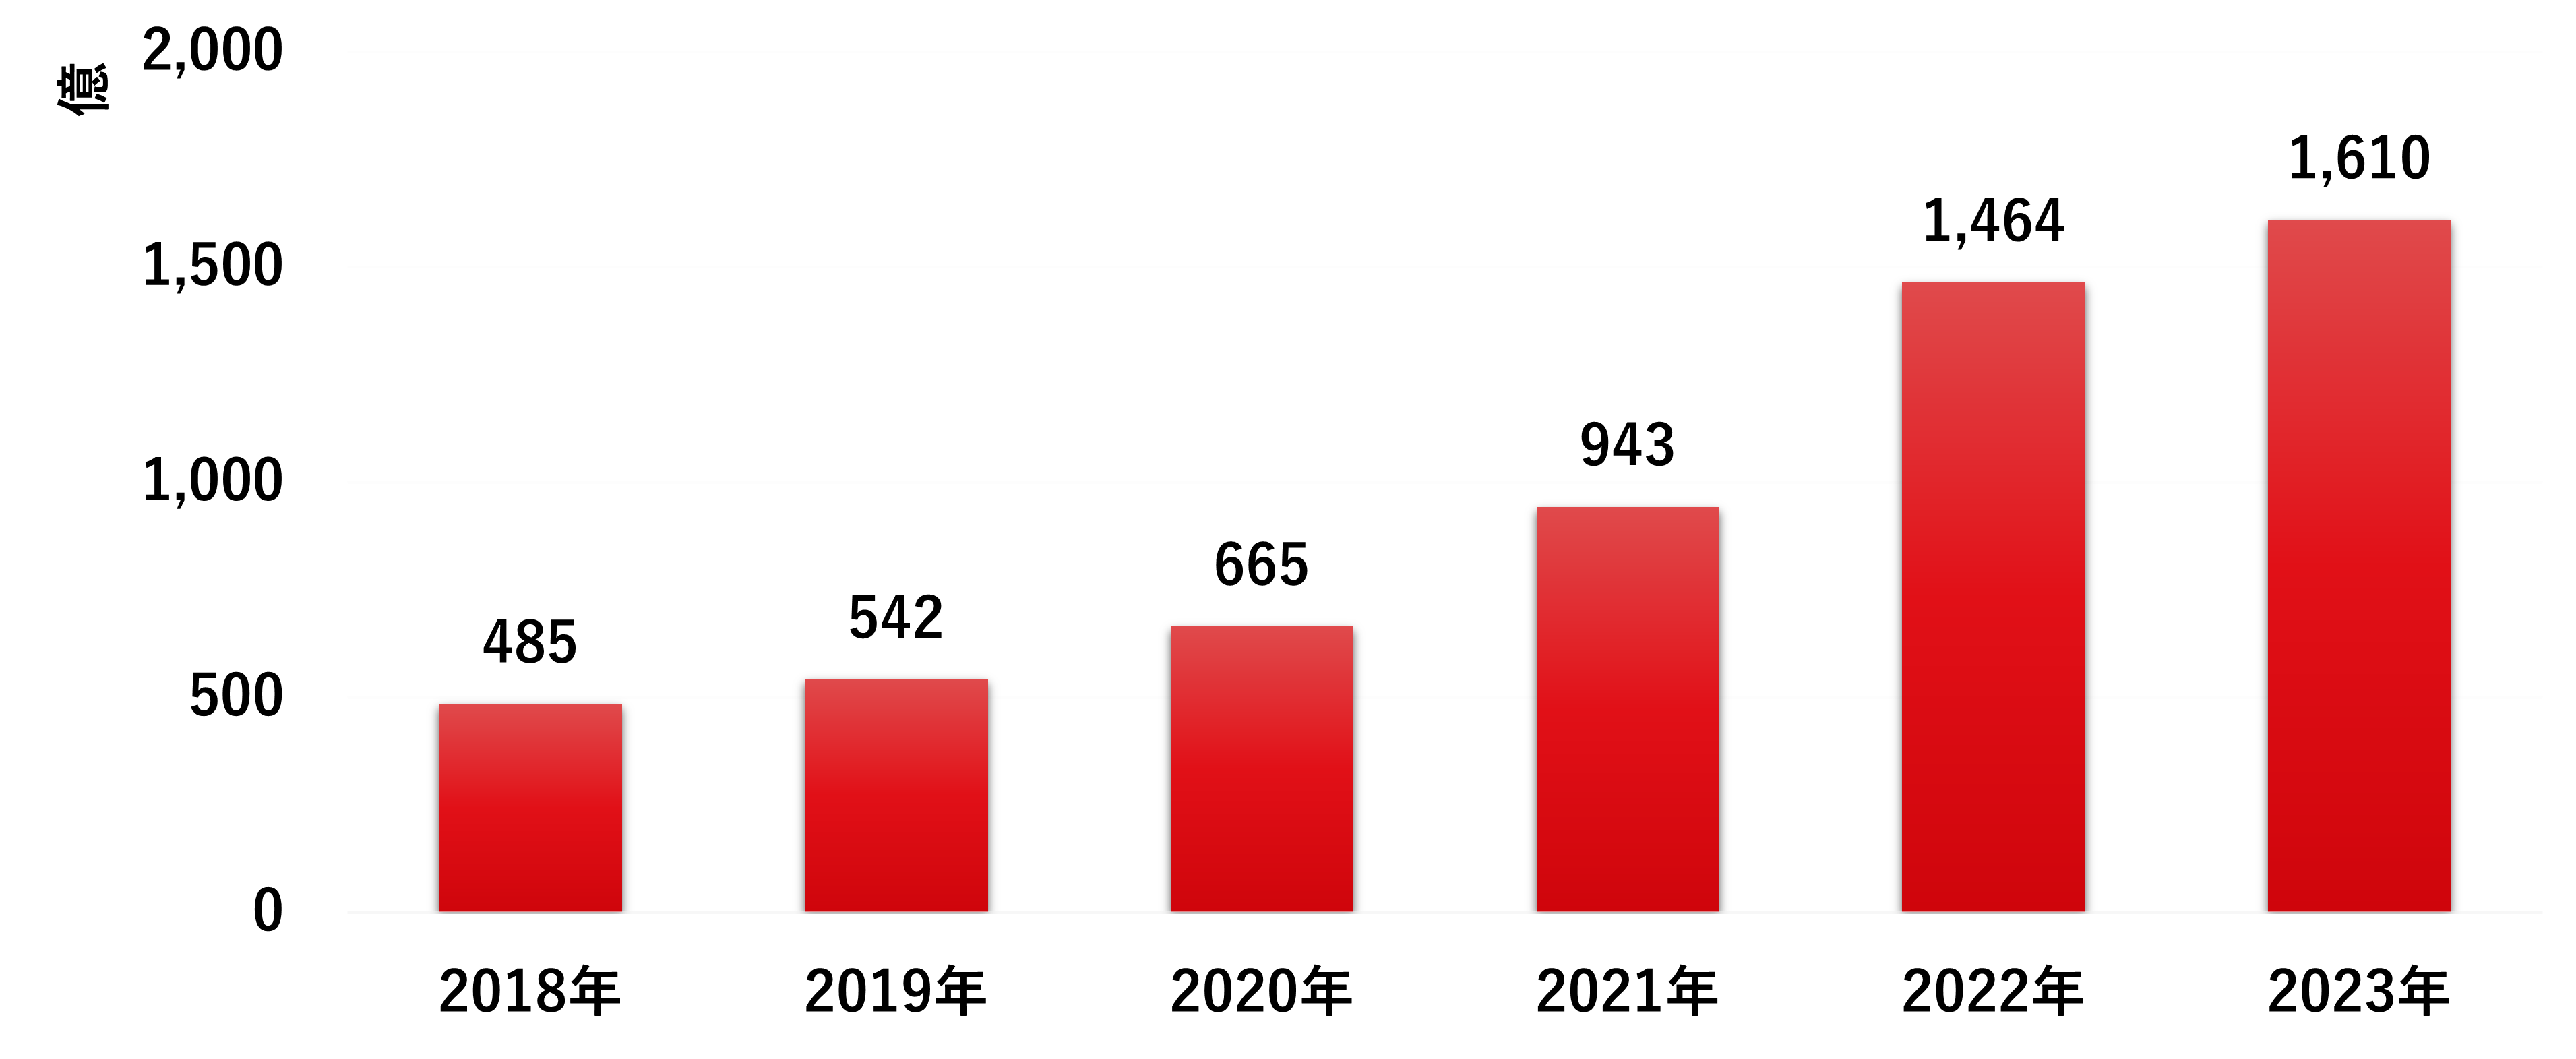 図：2018～2023年までの年別サイバー攻撃検出数の推移（全世界）